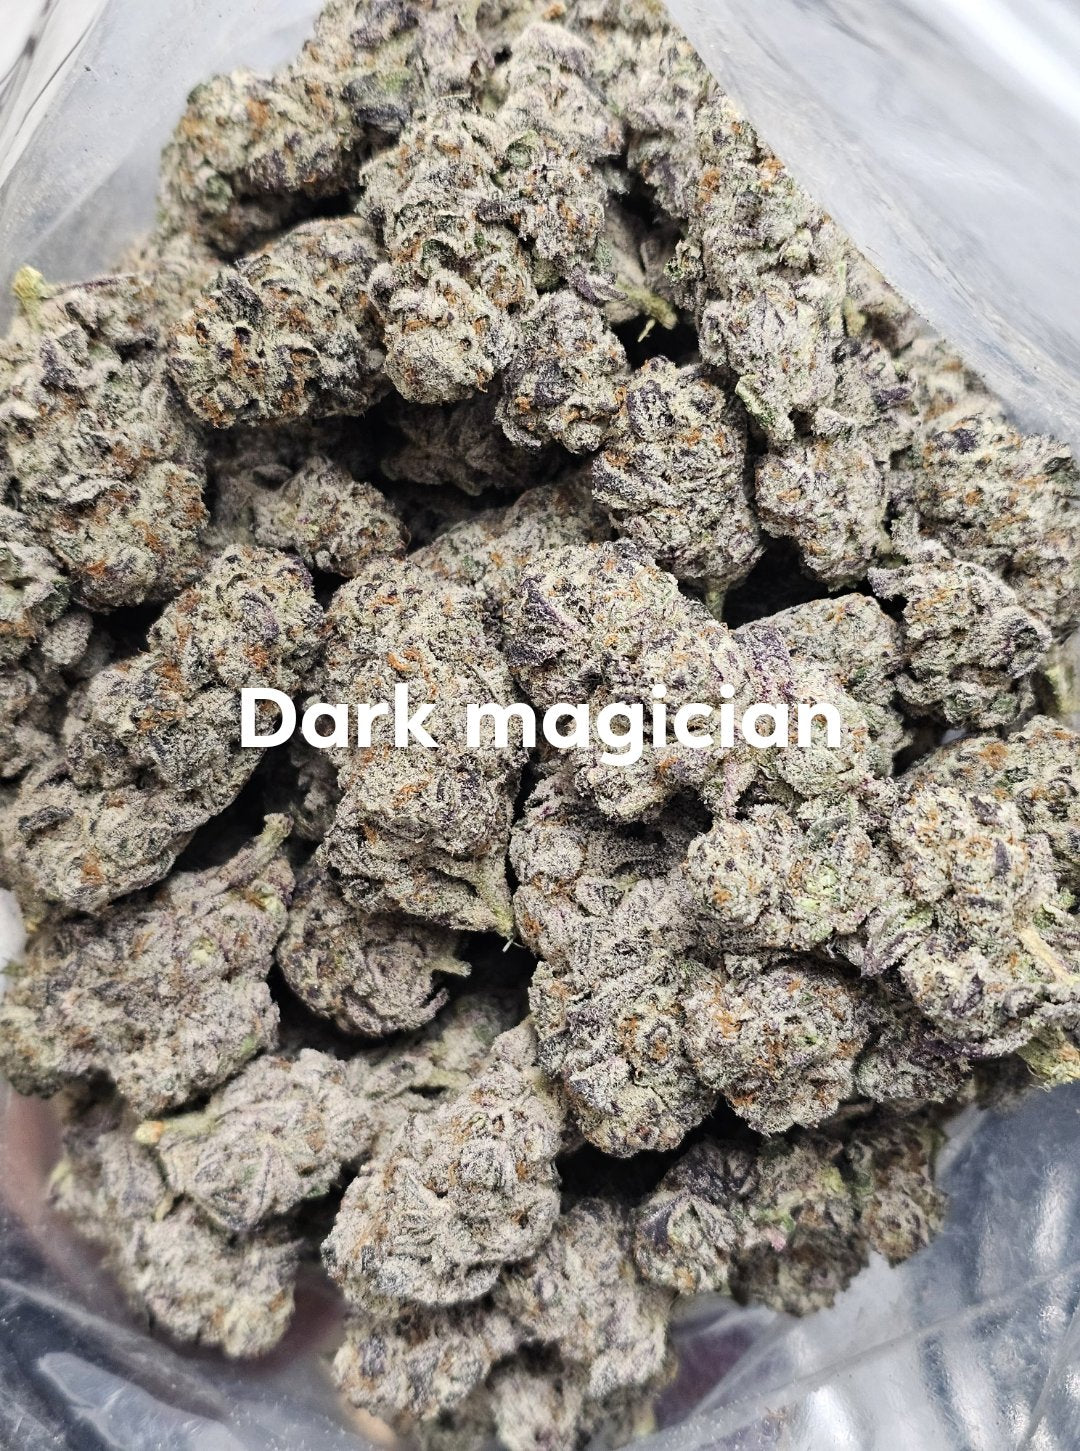 AAAA Dark Magician